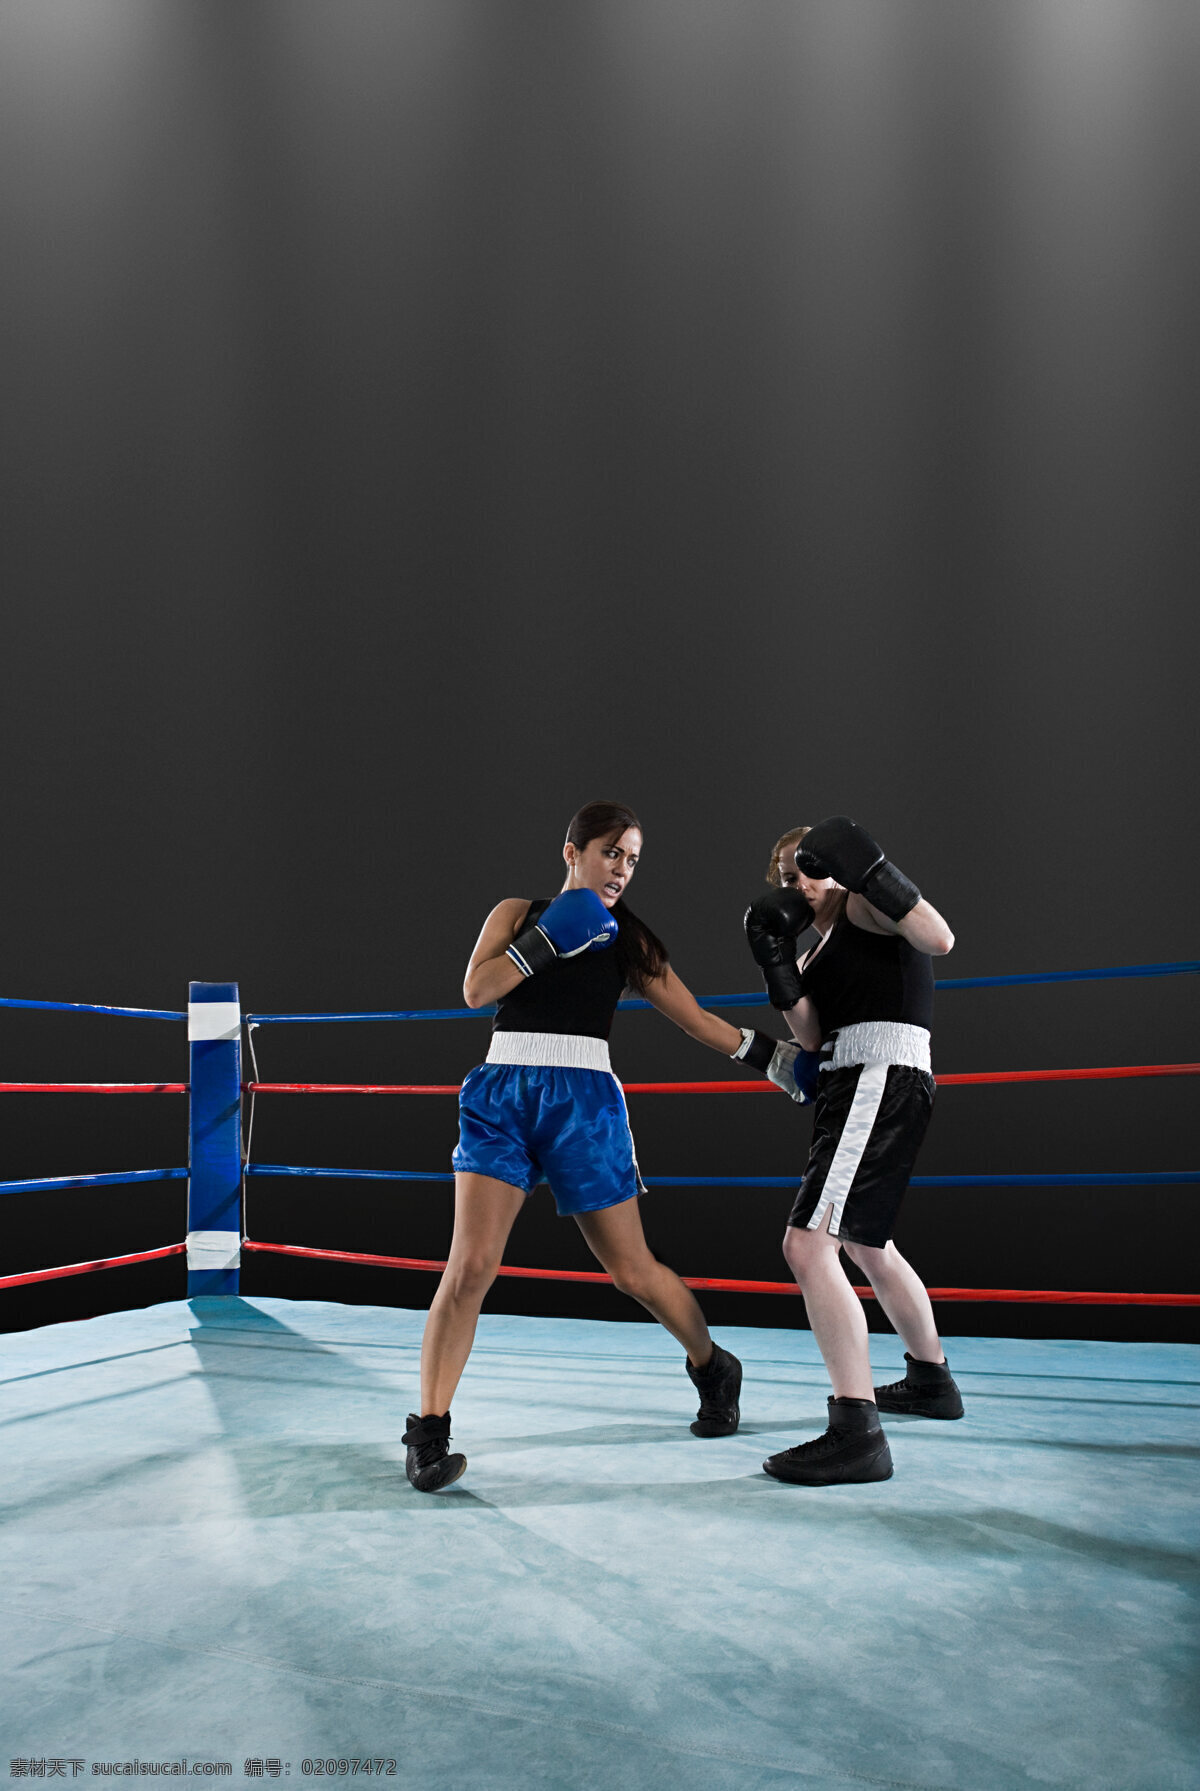 擂台 上 训练 女 拳击手 自信 比赛 拳击手套 拳击 搏击 力量 女人 肌肉 高清图片 商务人士 人物图片